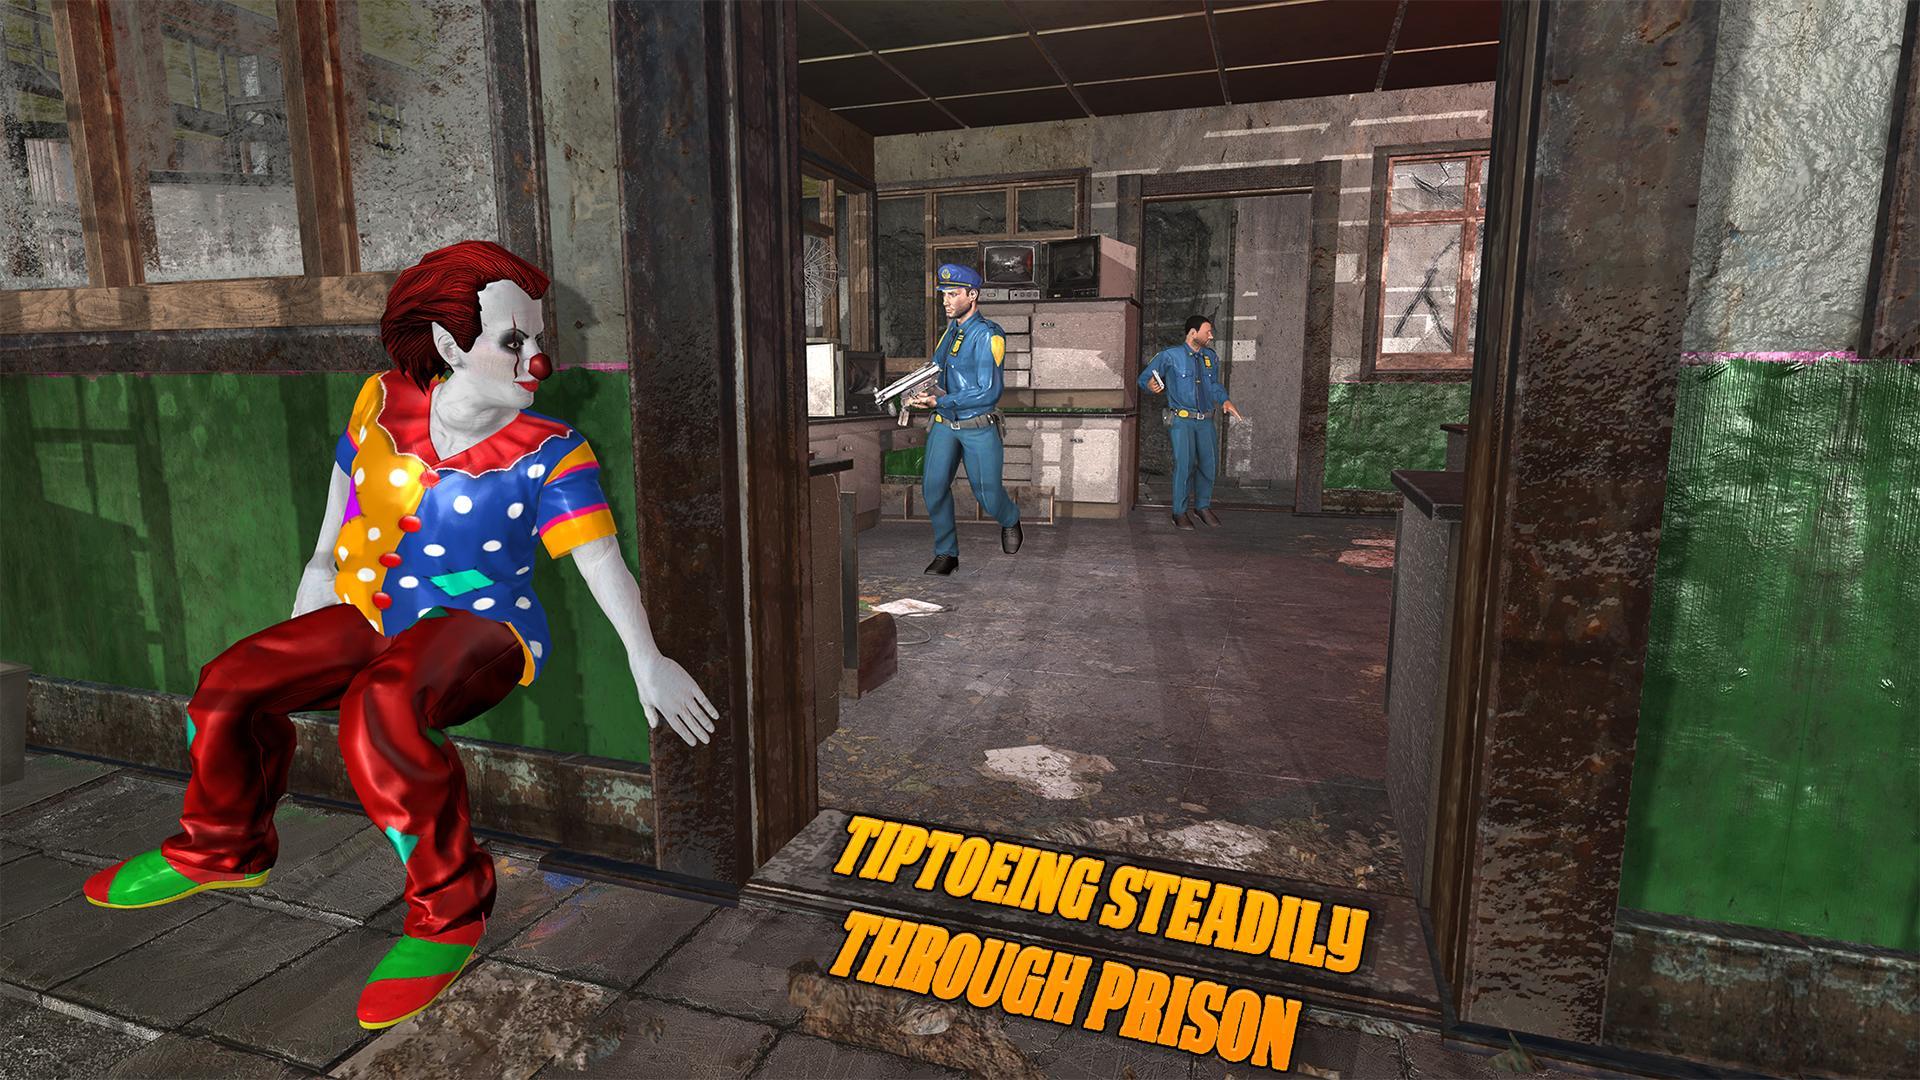 Killer Clown Prison Escape Jailbreak Simulator Pour Android - escape the crazy circus clown in roblox